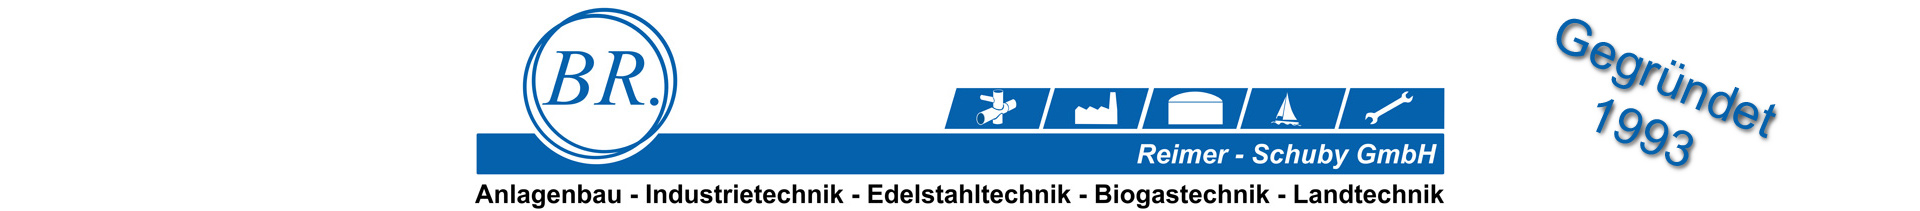 Logo Reimer Schuby GmbH